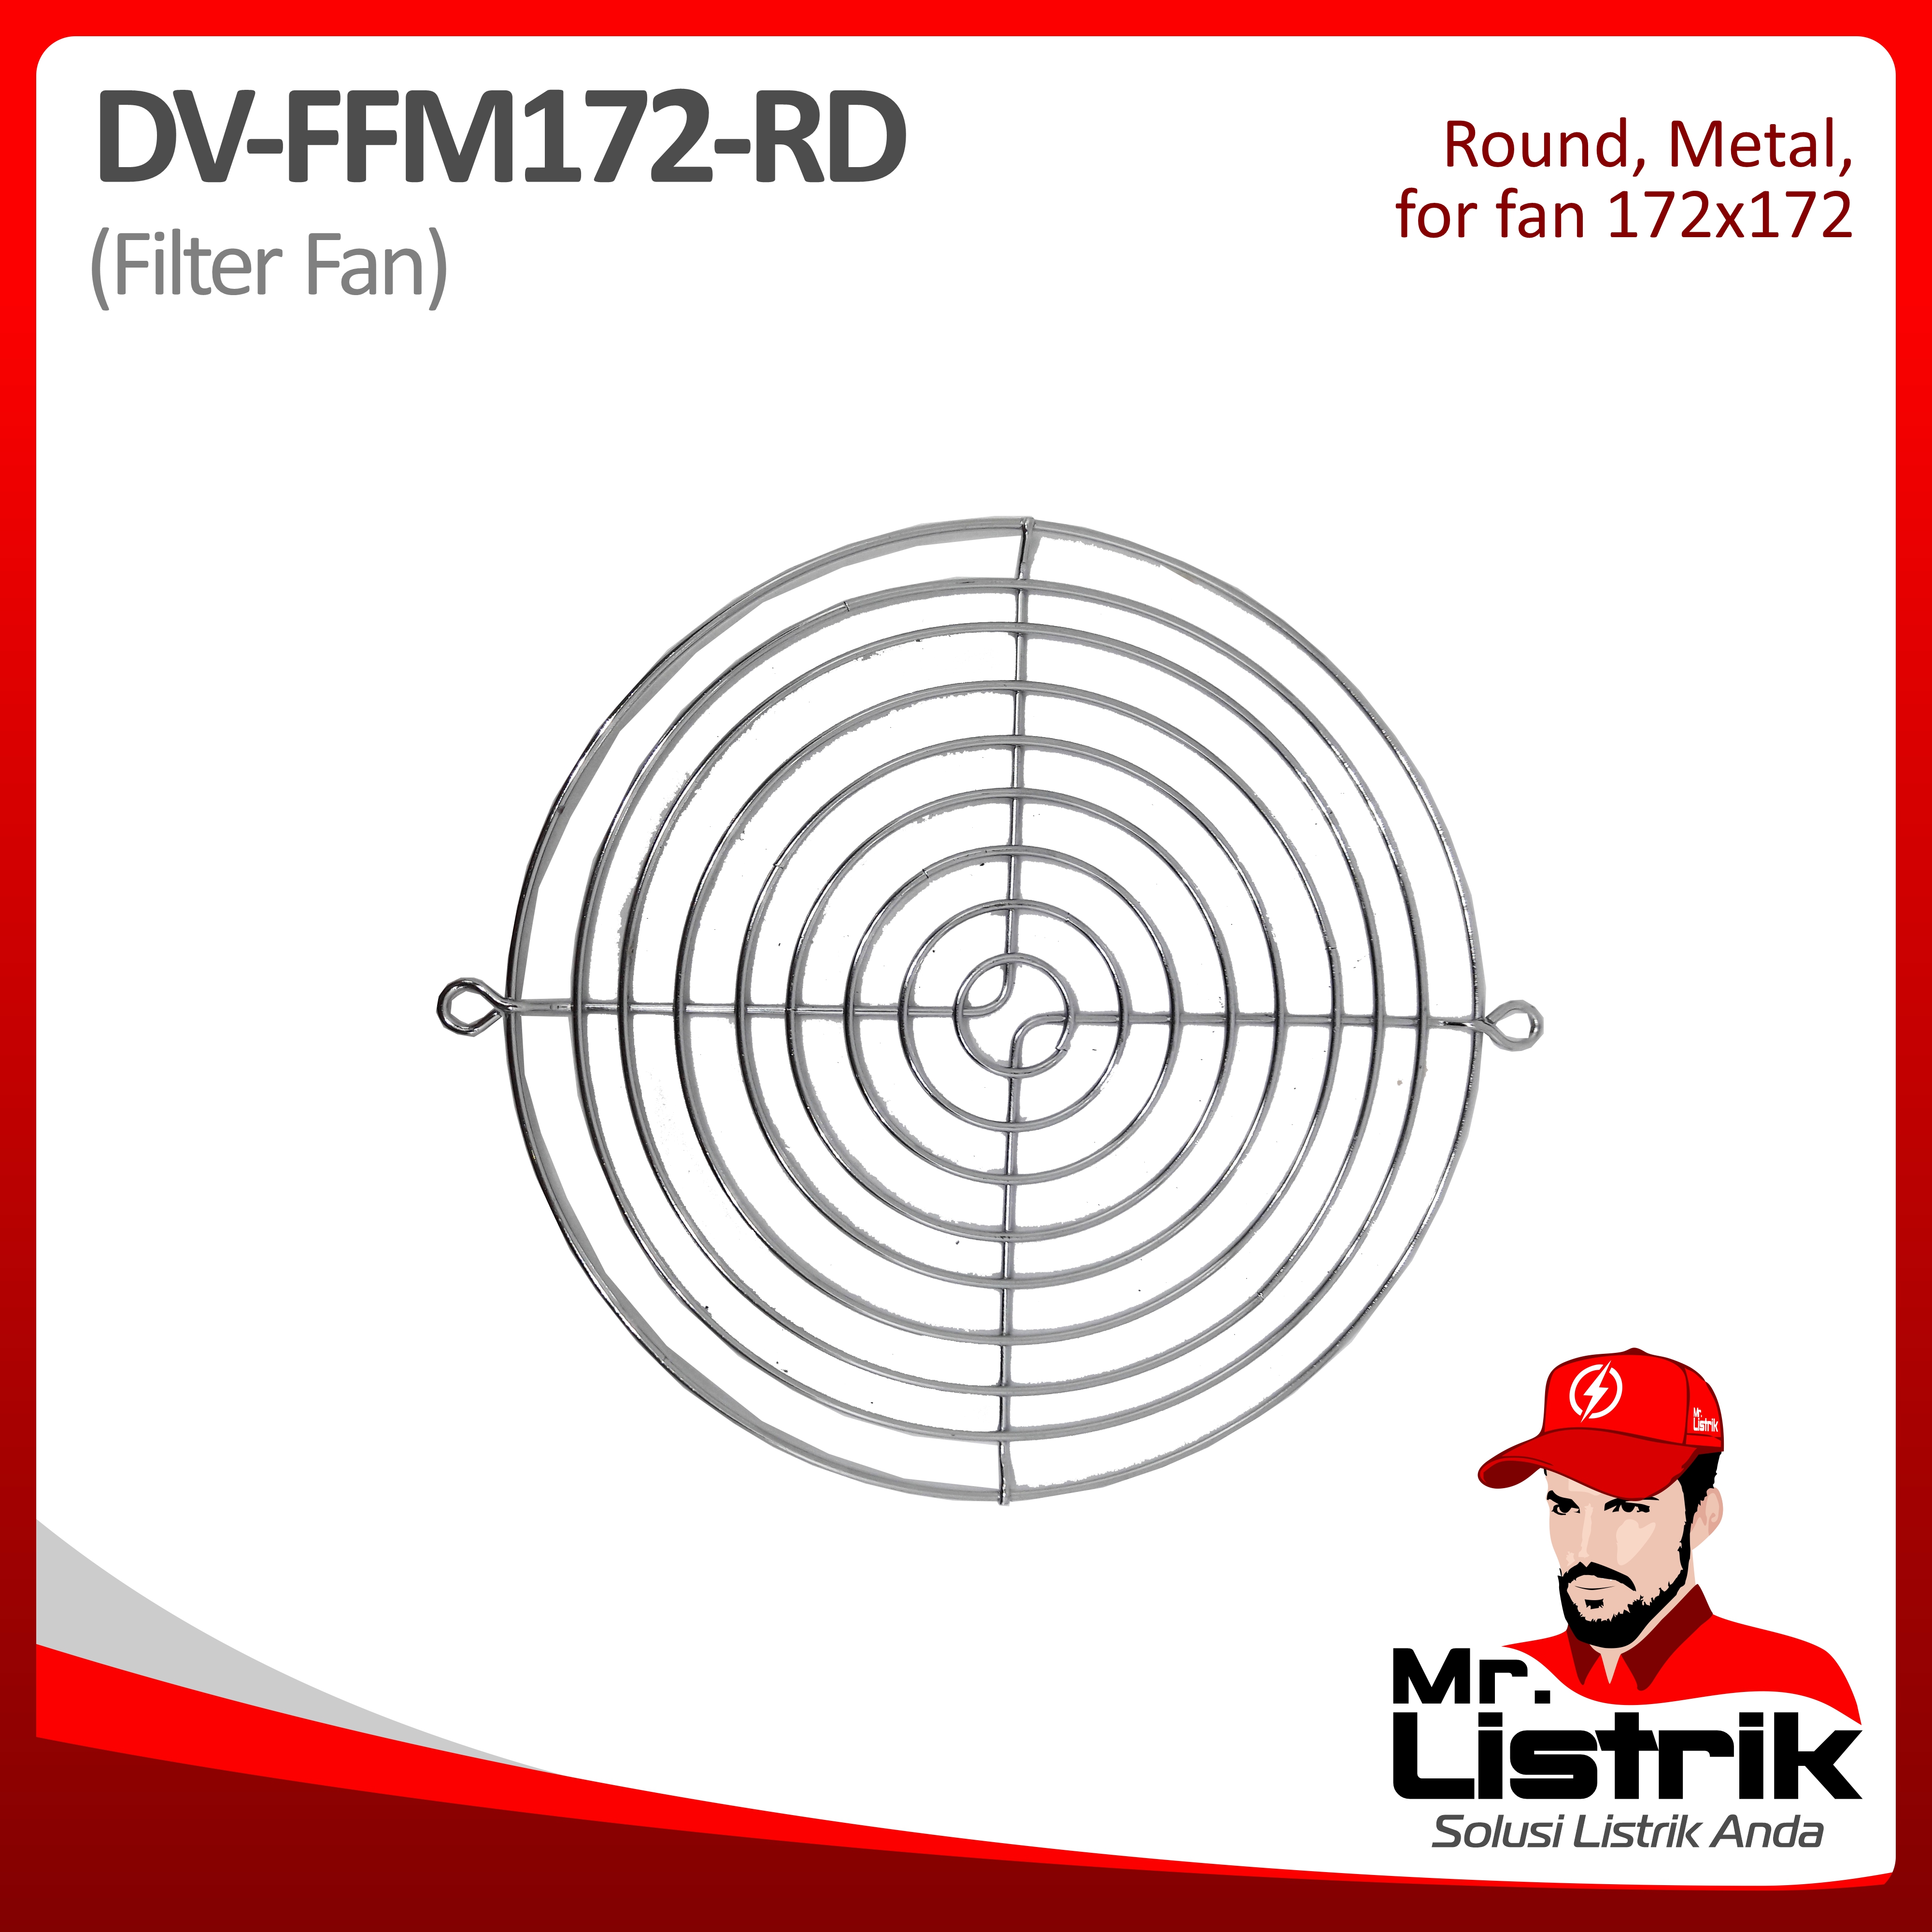 Filter Fan Metal Round For Fan 172x172 DV FFM172-RD